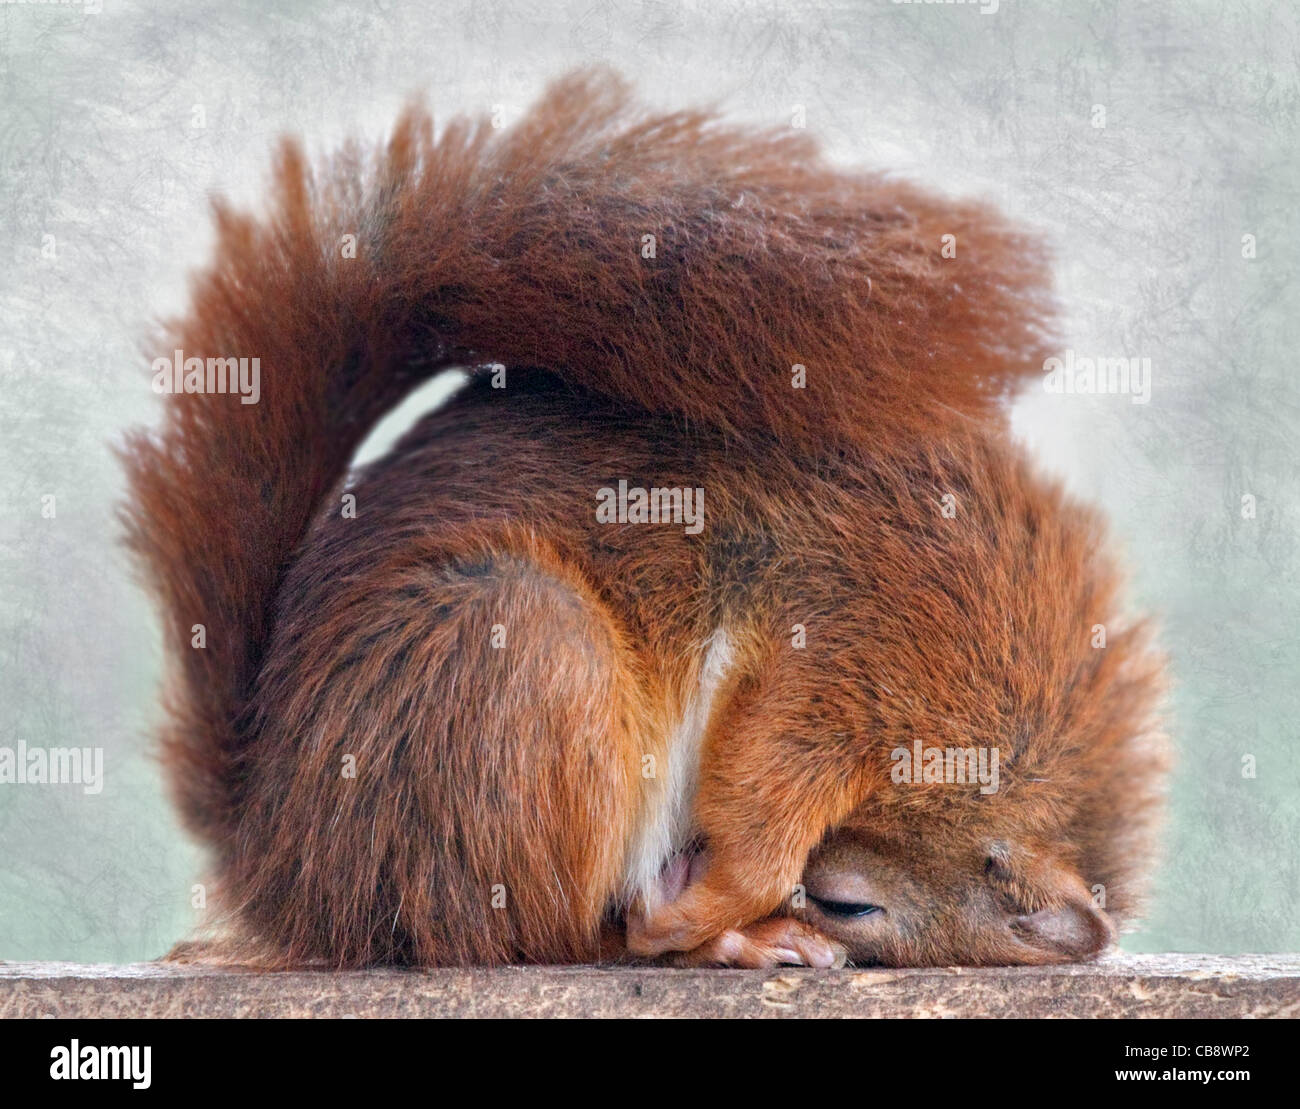 L'Écureuil roux (Sciurus vulgaris) dormir dans une pose étrange Banque D'Images